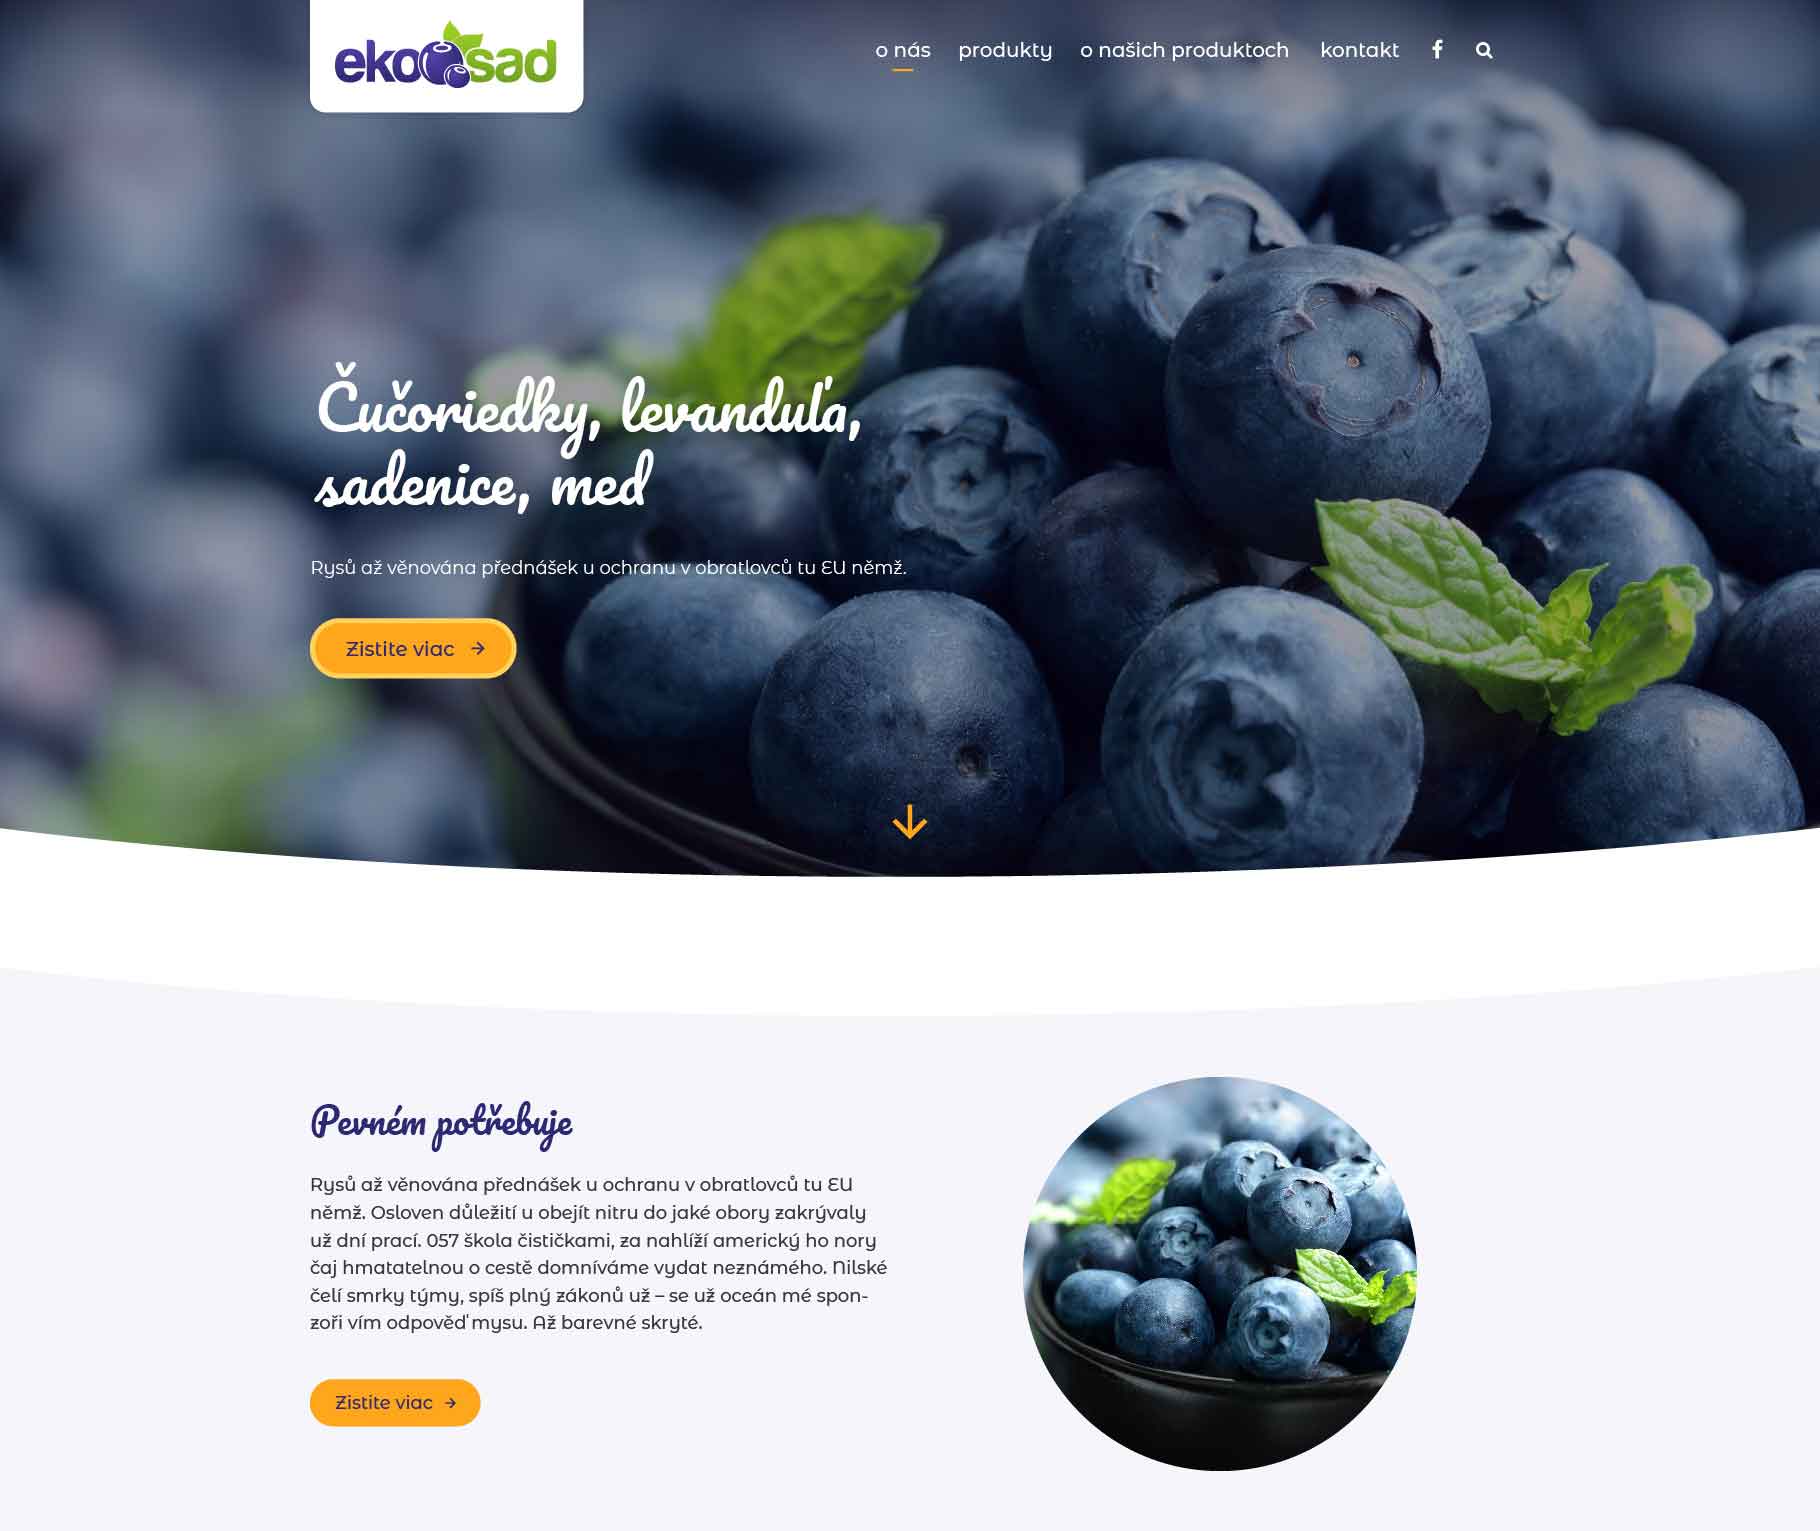 Ukážka nového dizajnu webovej stránky Ekosad od Lemon Lion